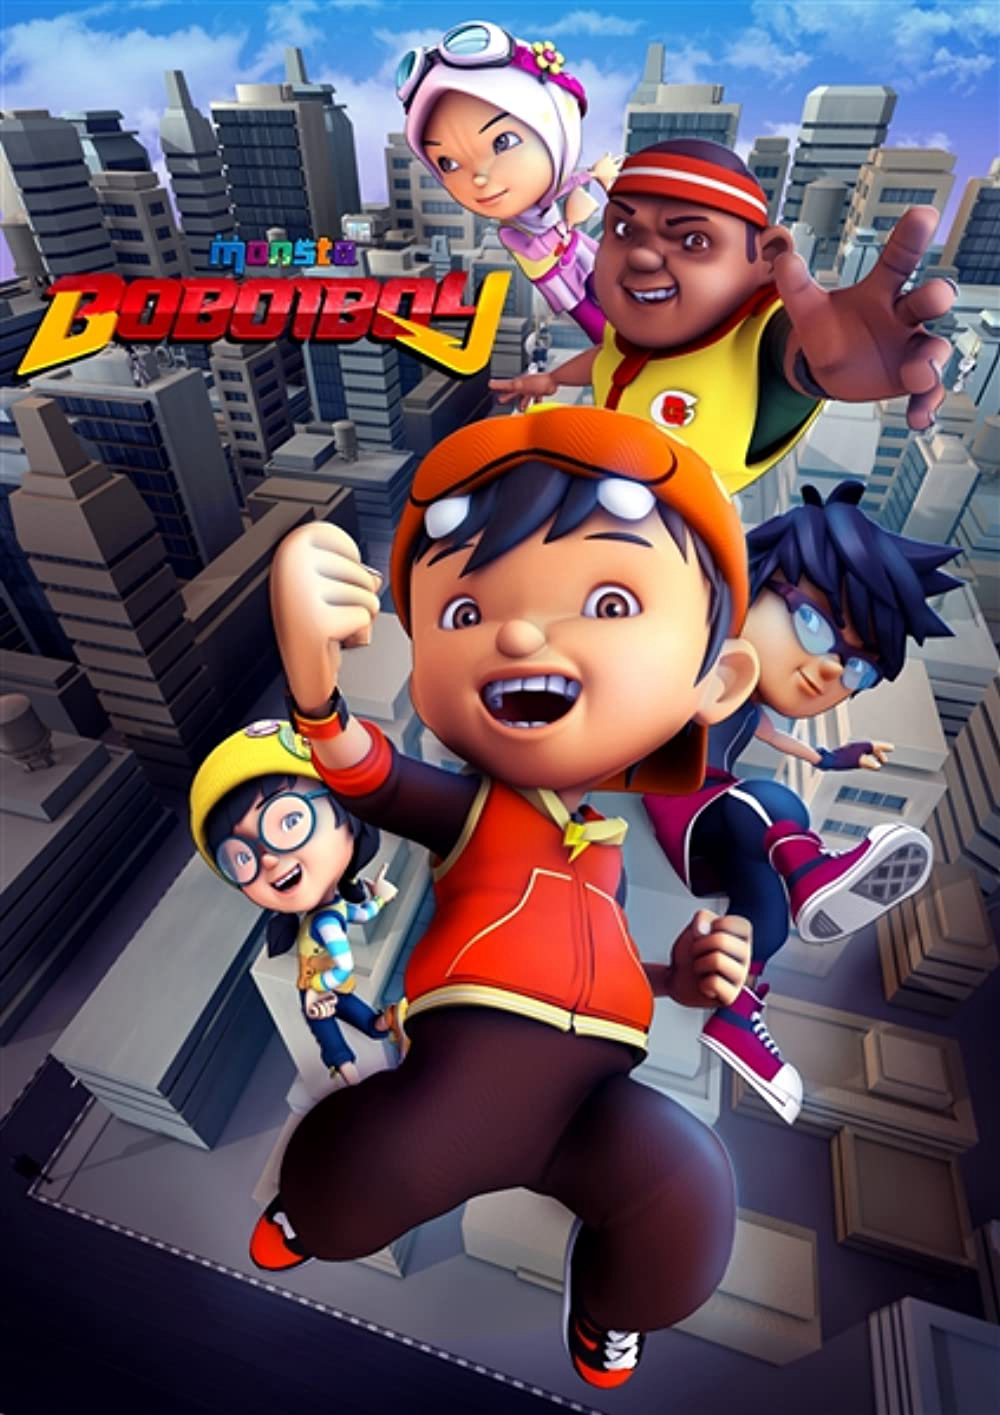 BoBoiBoy (Phần 1) - BoBoiBoy (Season 1)